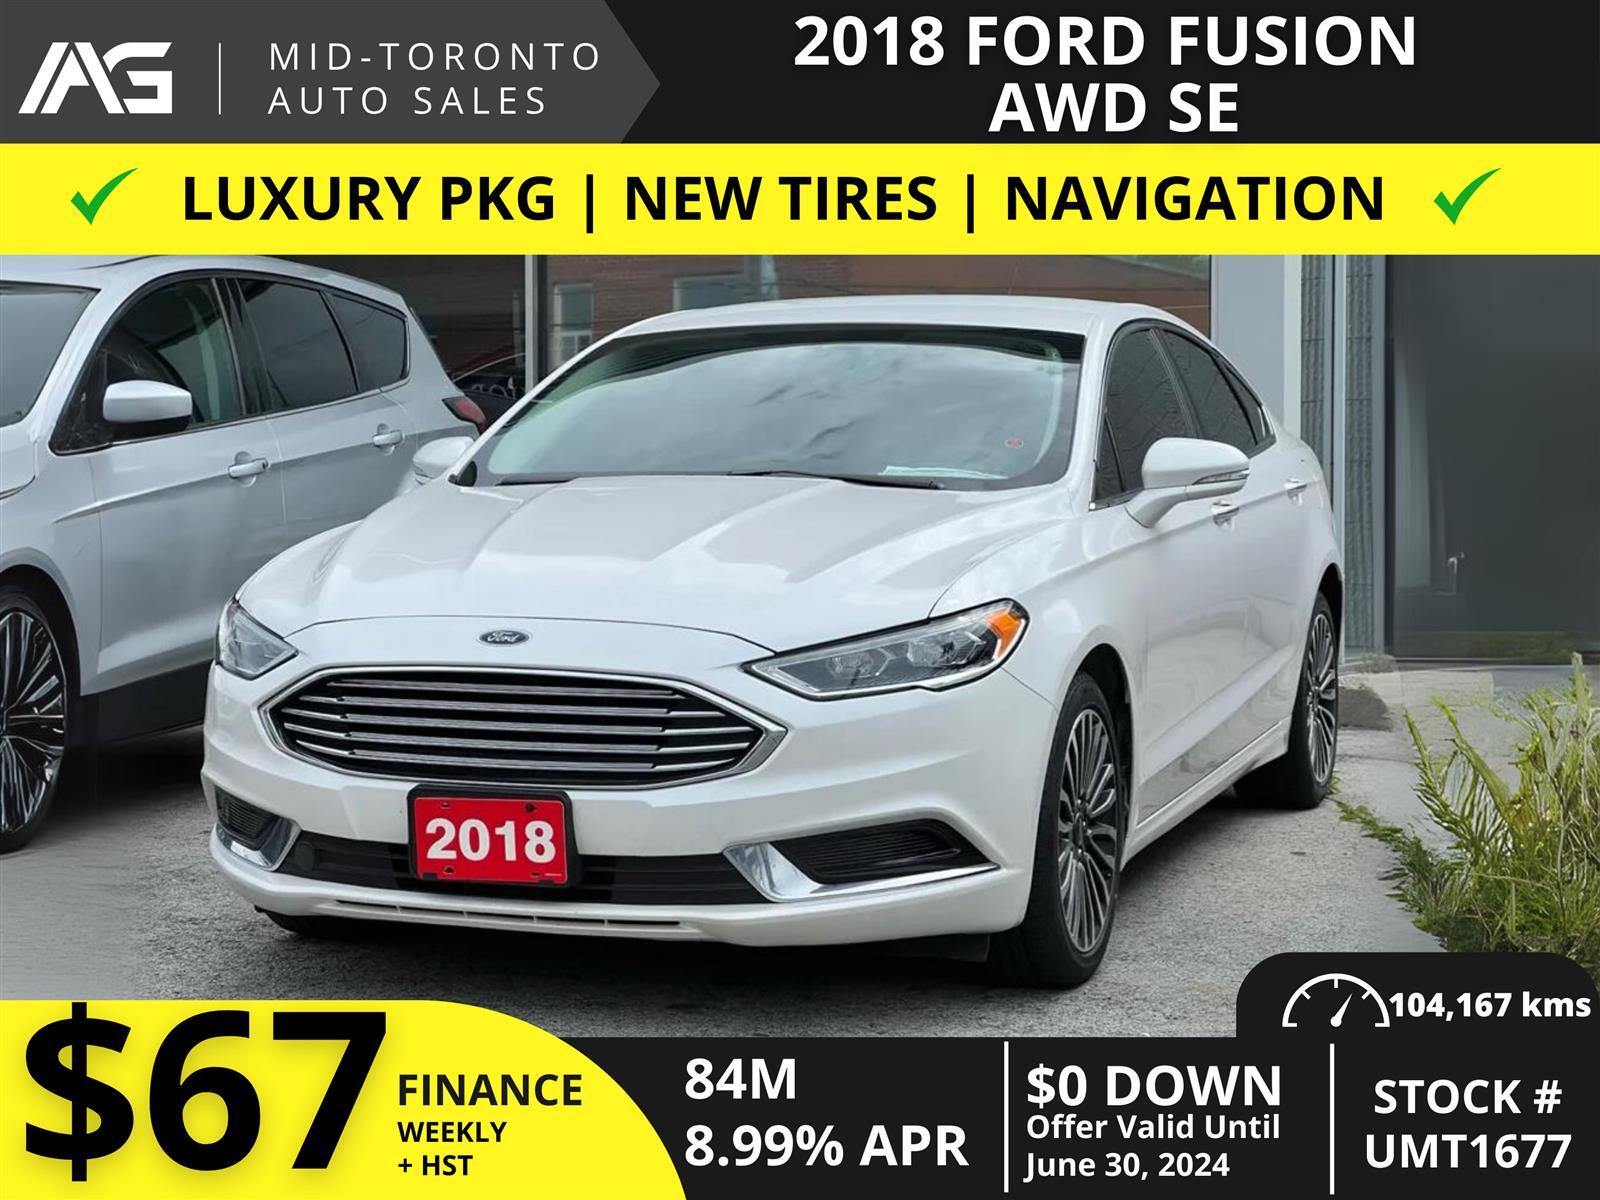 2018 Ford Fusion SE - AWD - Luxury Pkg - Tech Pkg - Navigation - Le